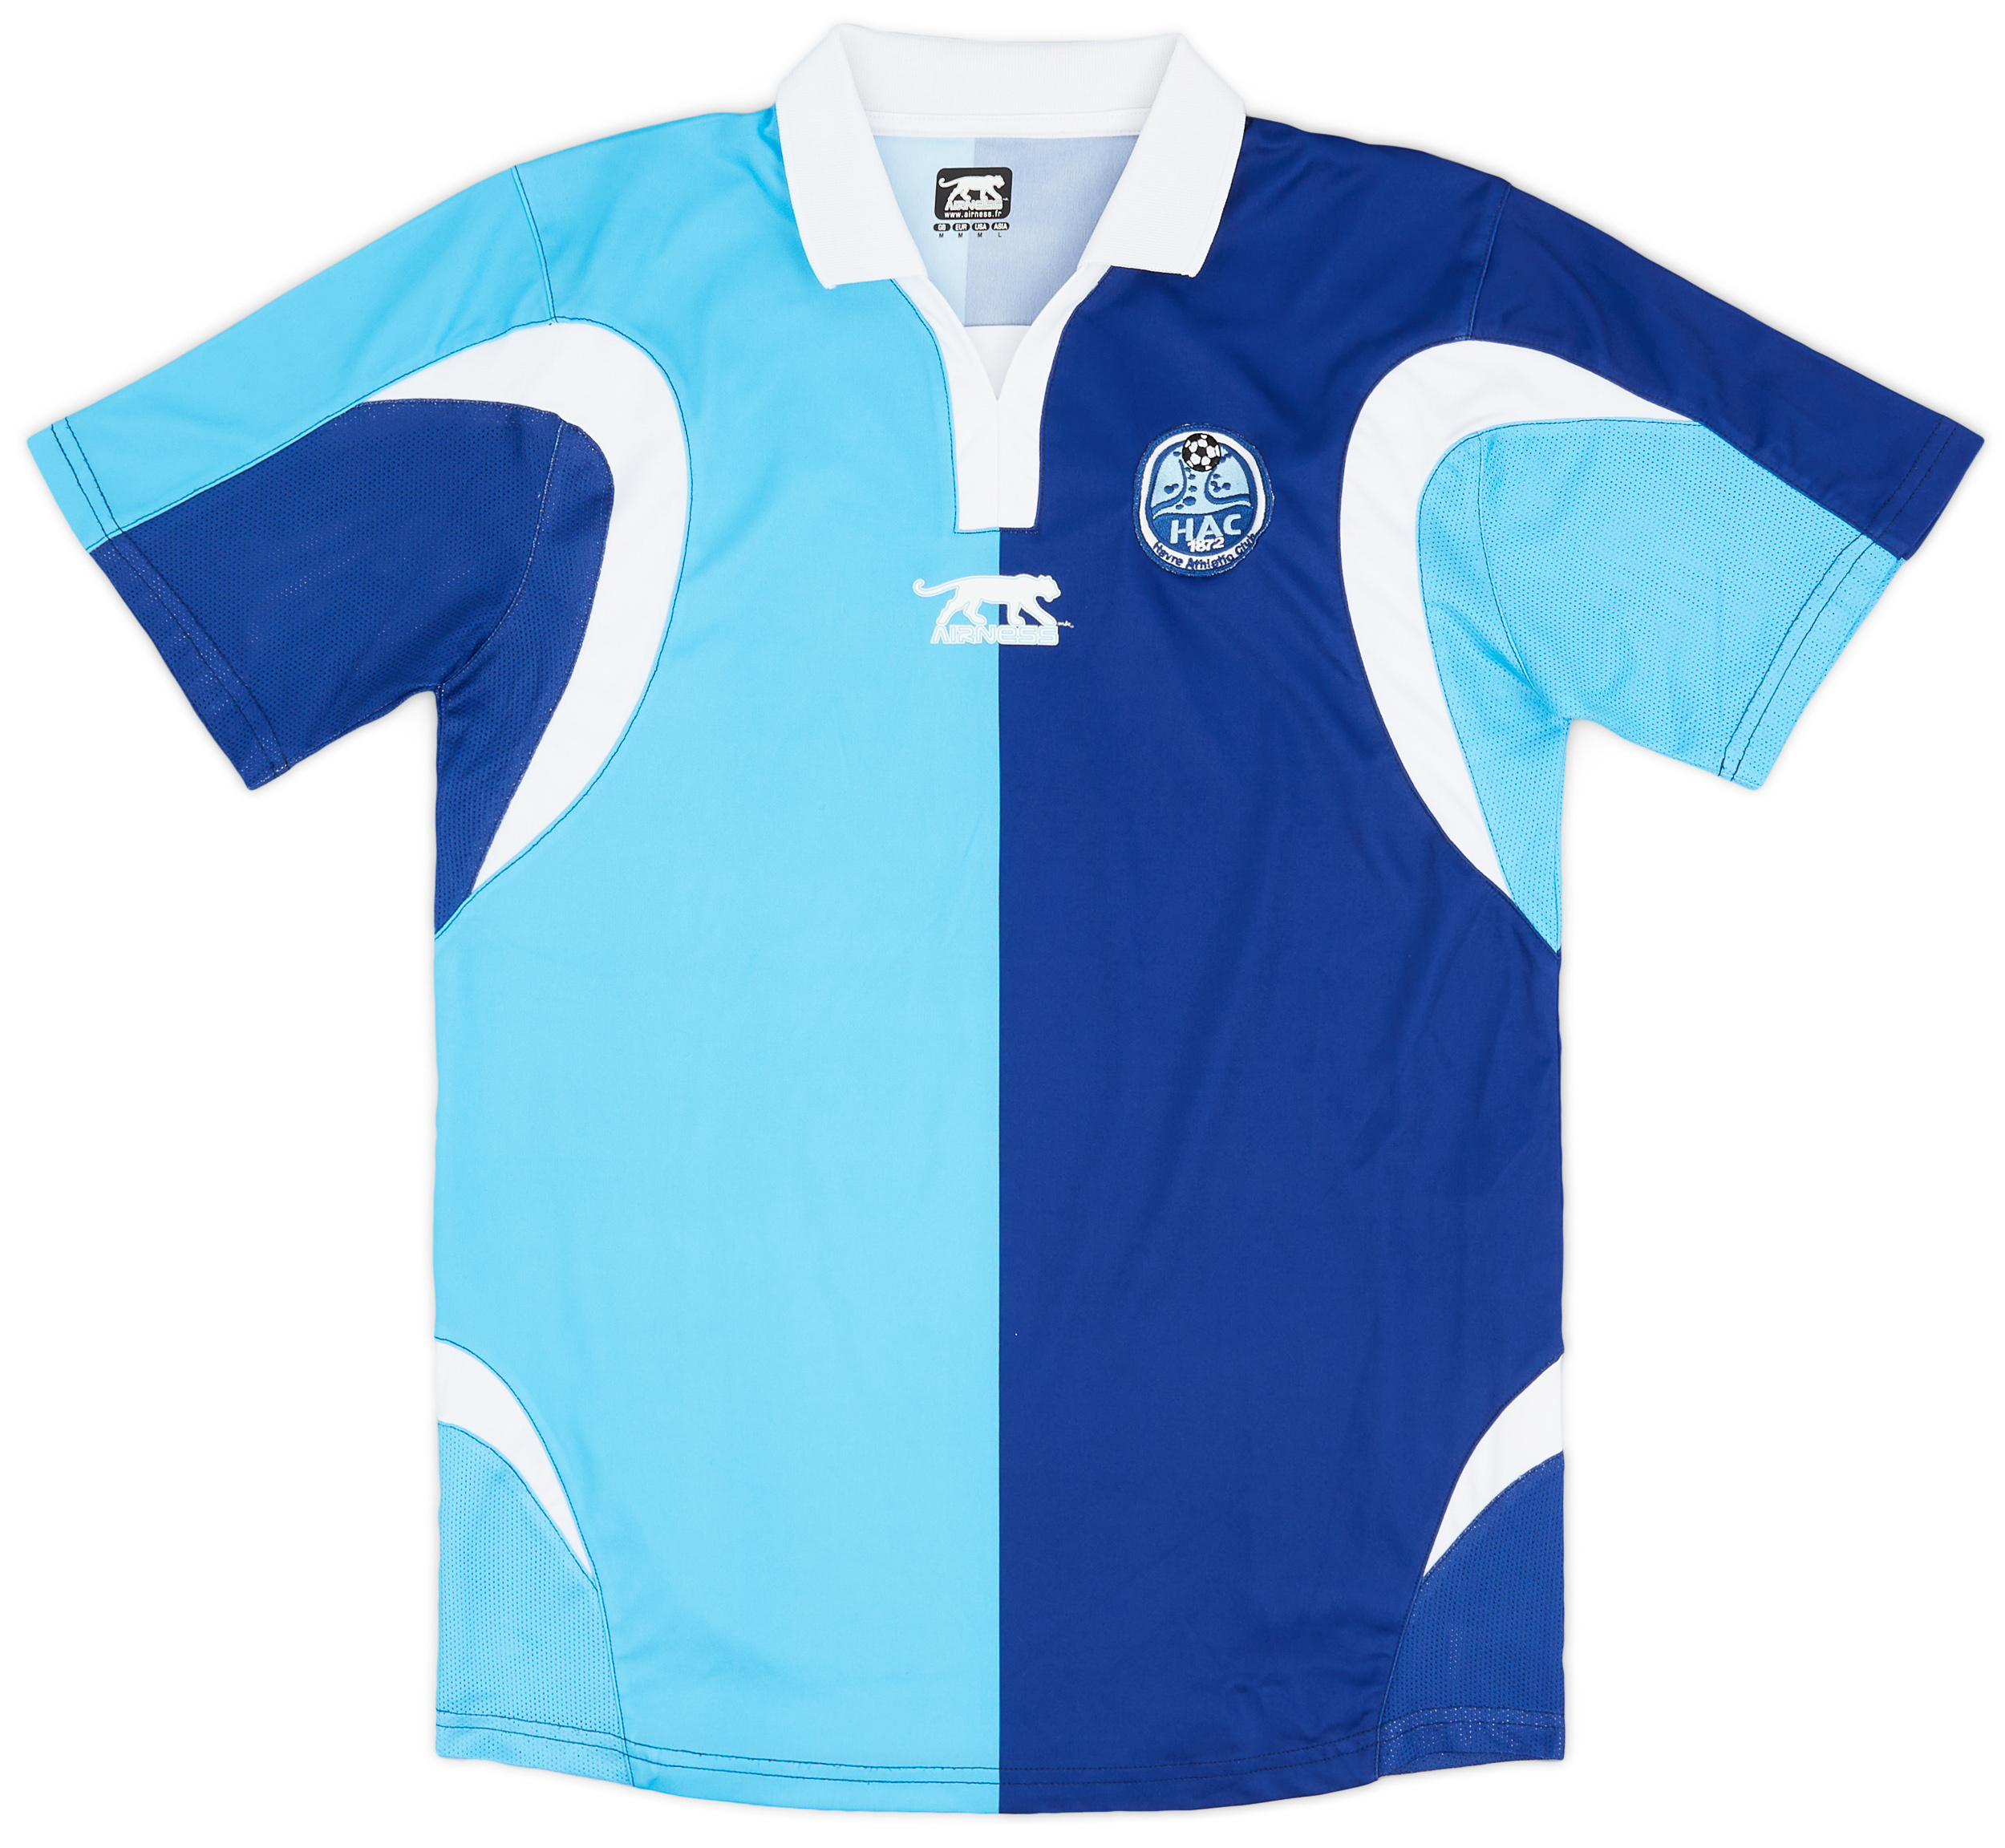 Le Havre AC  home shirt  (Original)